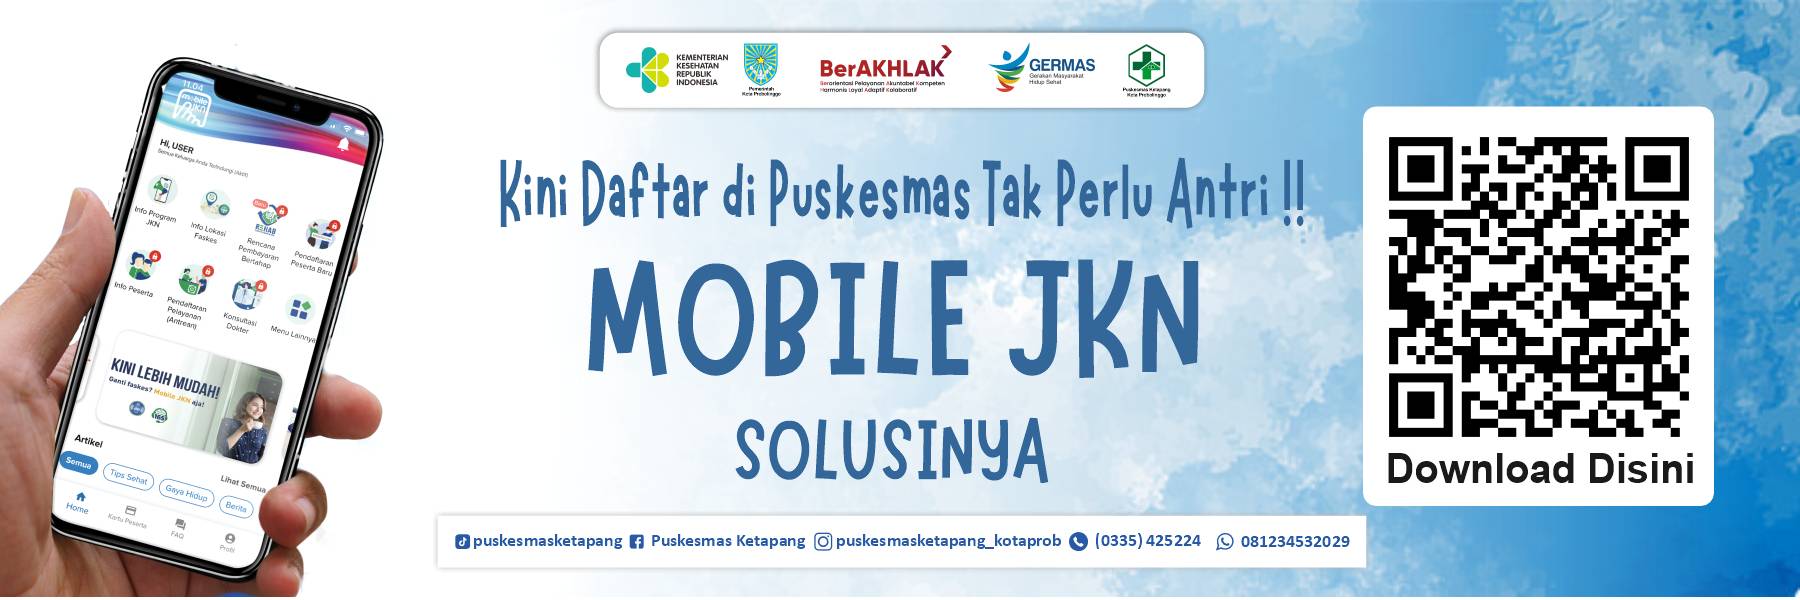 mobile jkn